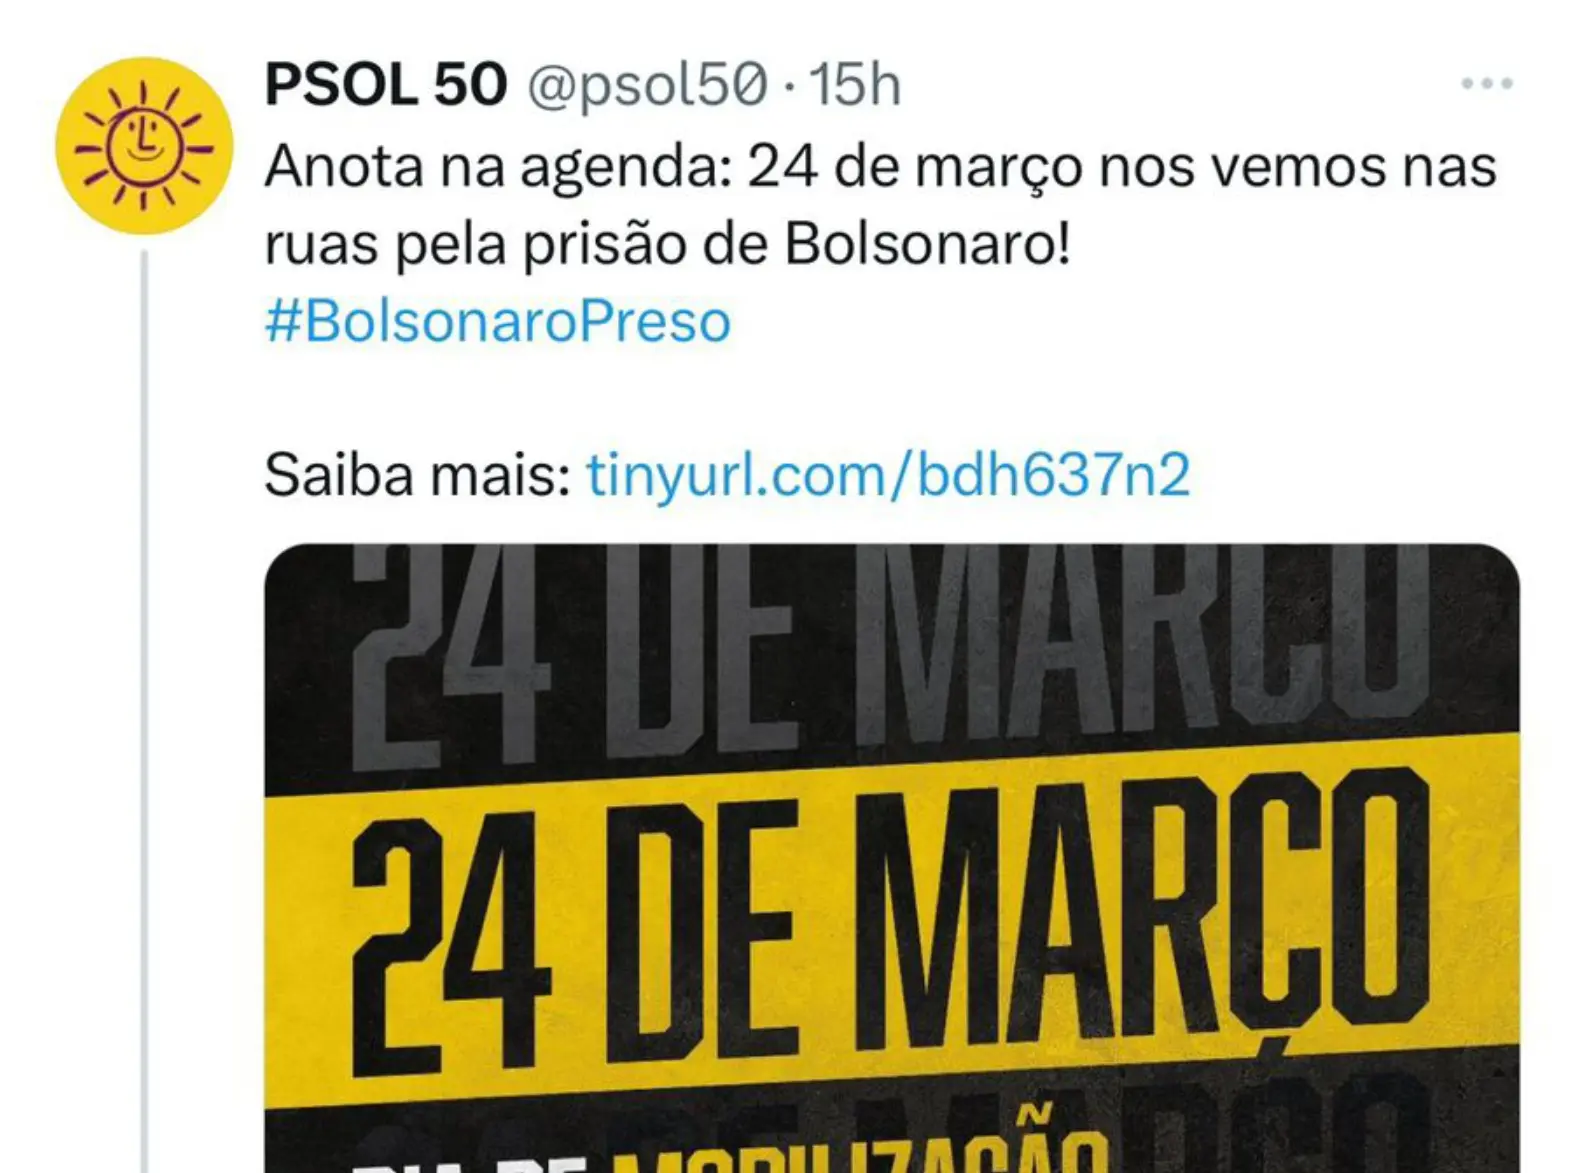 PSOL planeja protesto para exigir prisão de Bolsonaro, mas retira publicação rapidamente